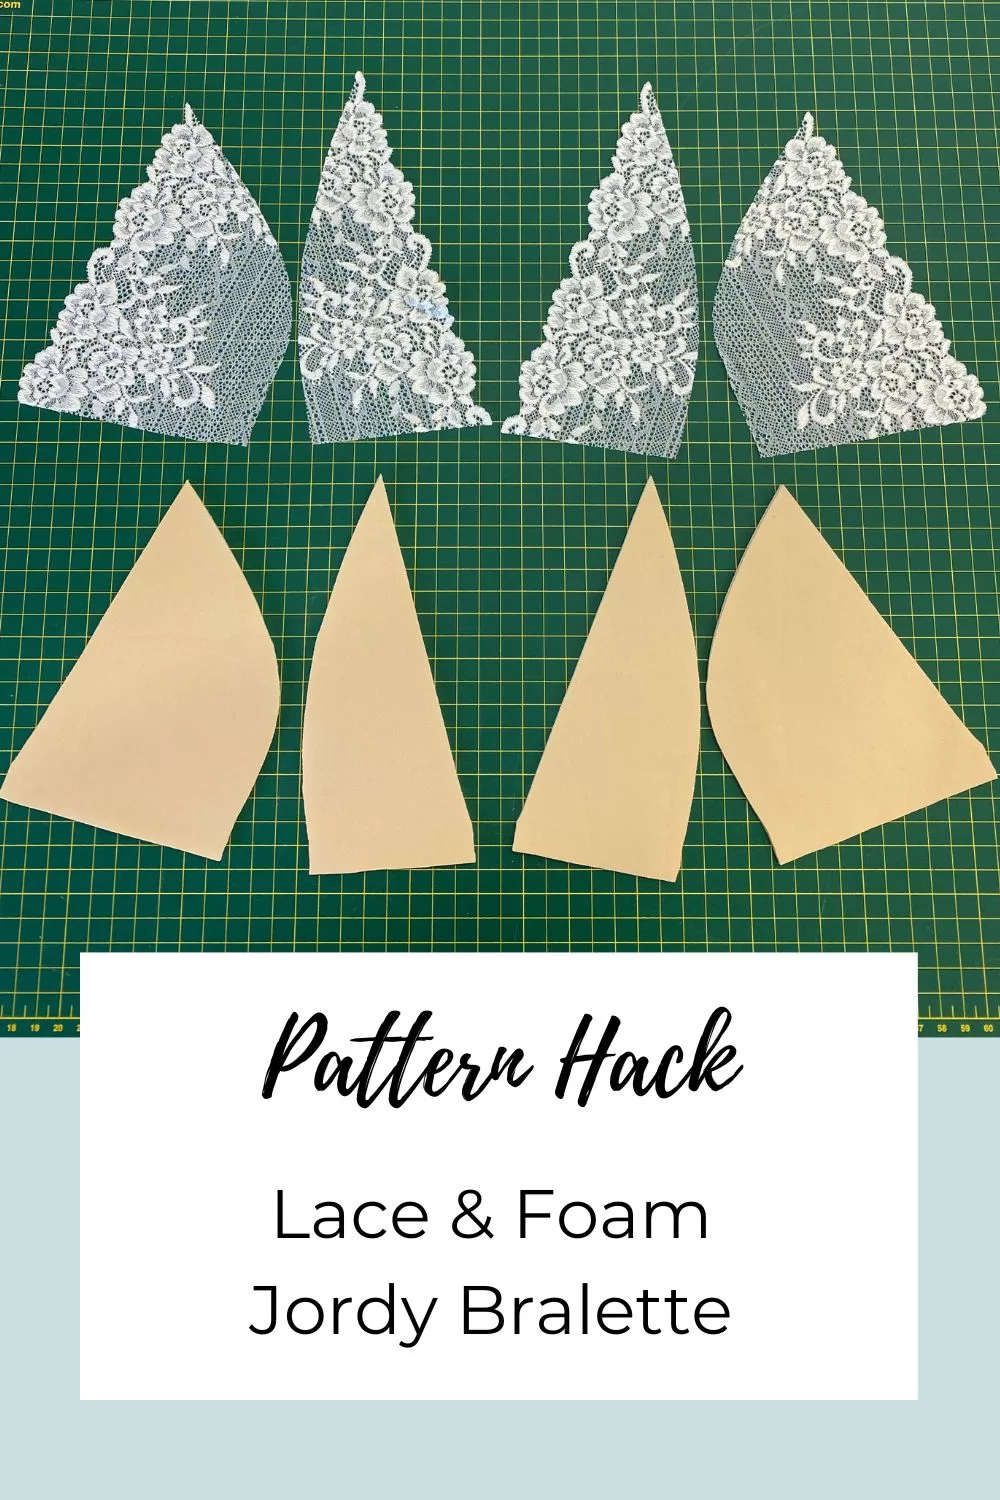 Jordy Bralette Lace & Foam Pattern Hack